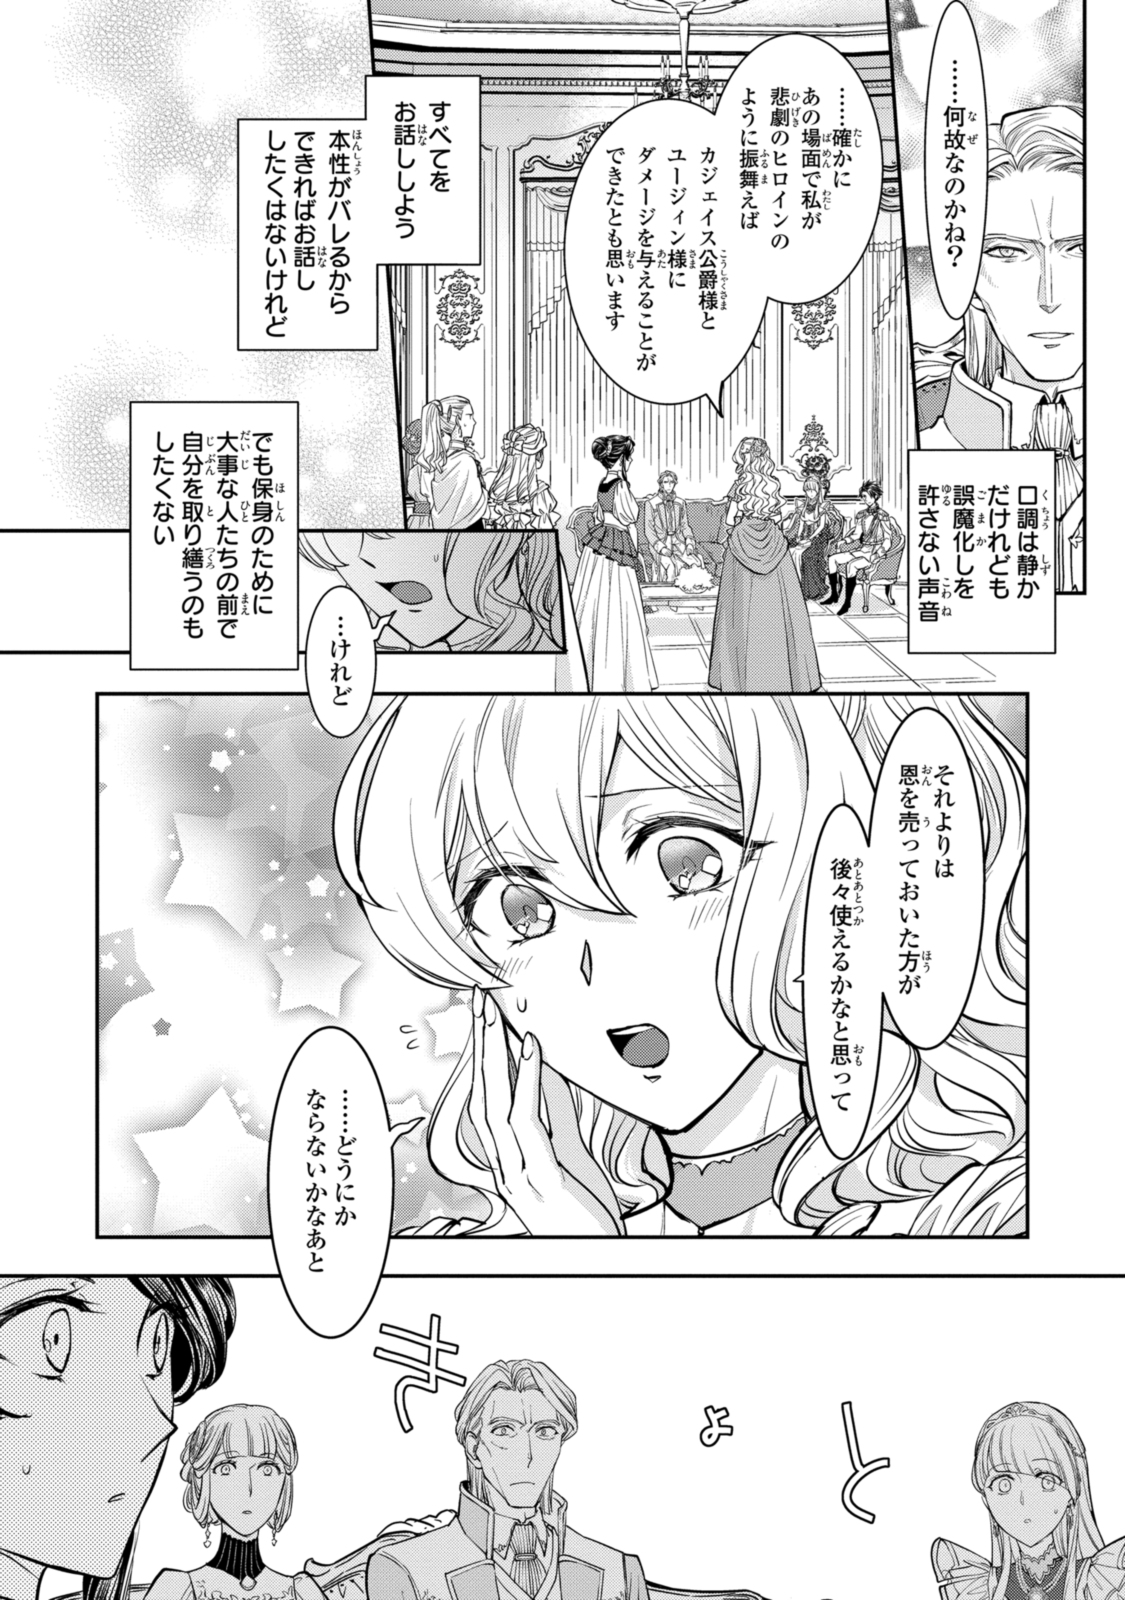 Sakkon no Cinderella wa Kutsu wo Otosanai. - Chapter 15.2 - Page 2